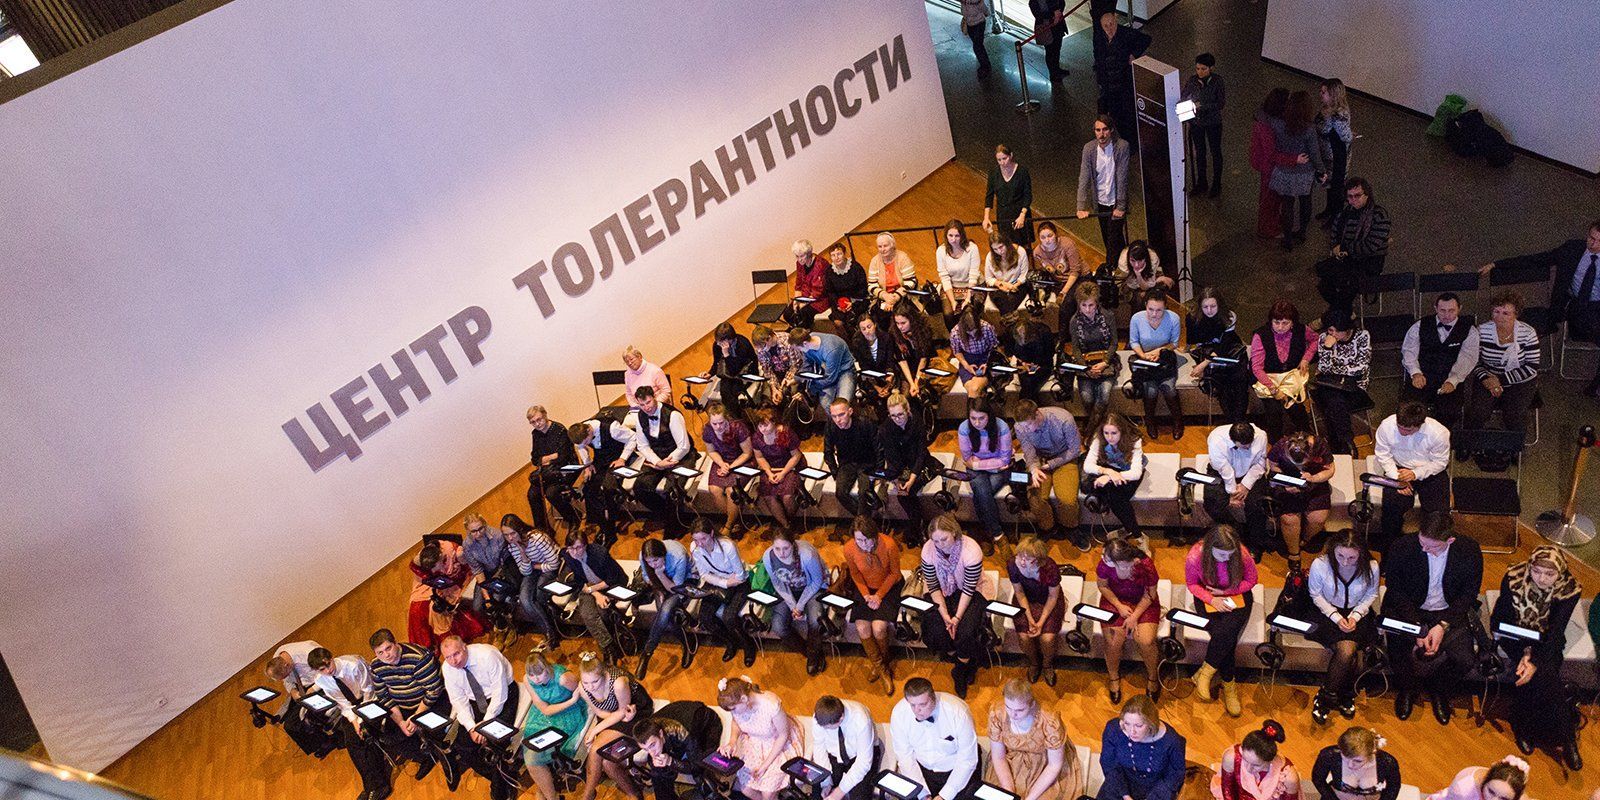 Еврейский музей проведет танцевальный перформанс в Москве